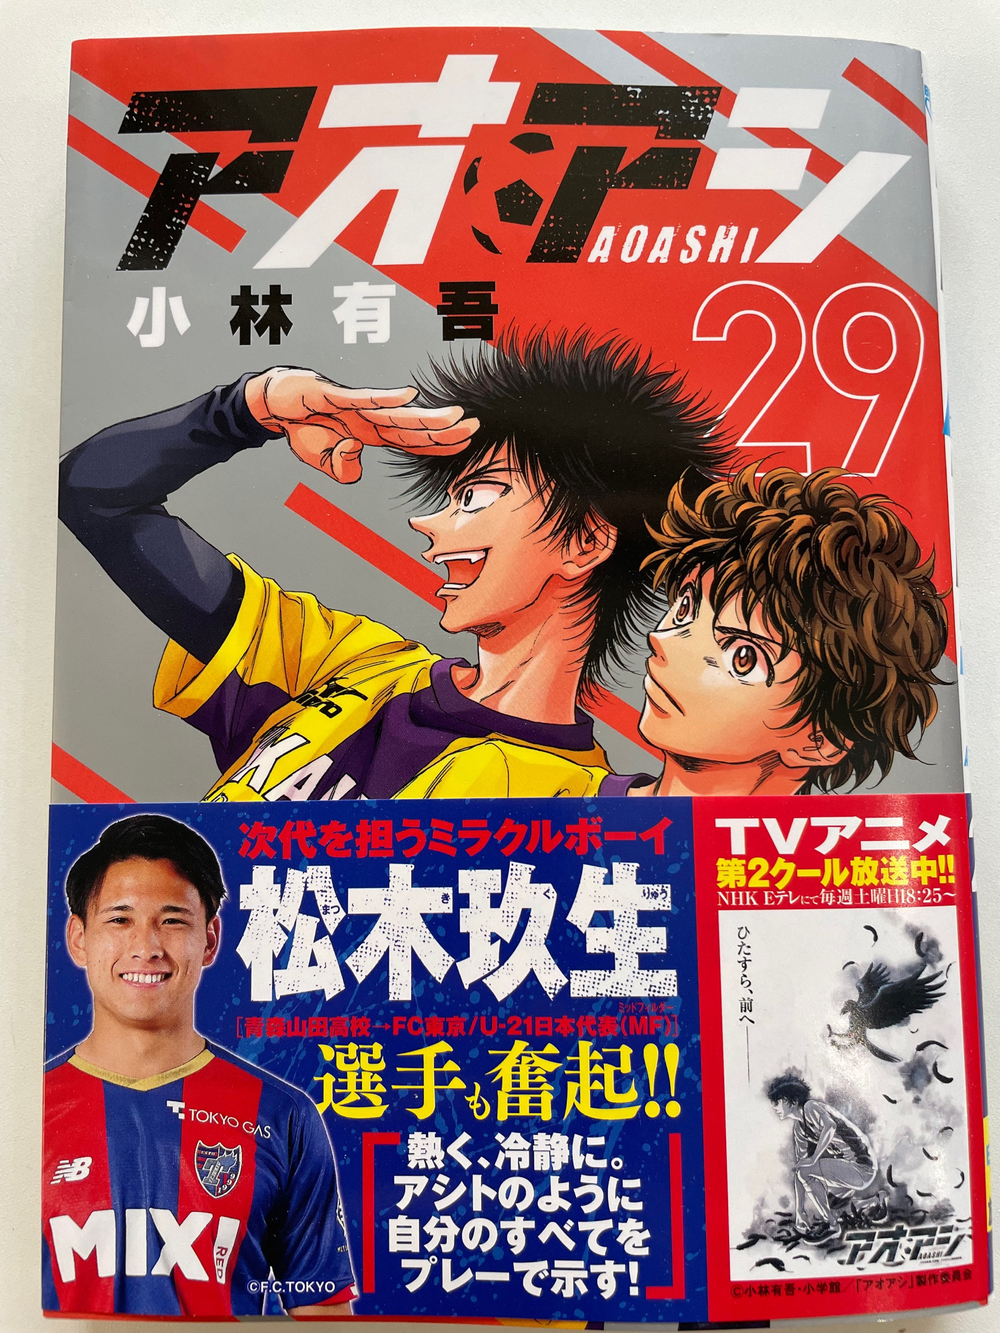 サッカー漫画「アオアシ」 29巻 単行本帯に松木玖生選手が登場 